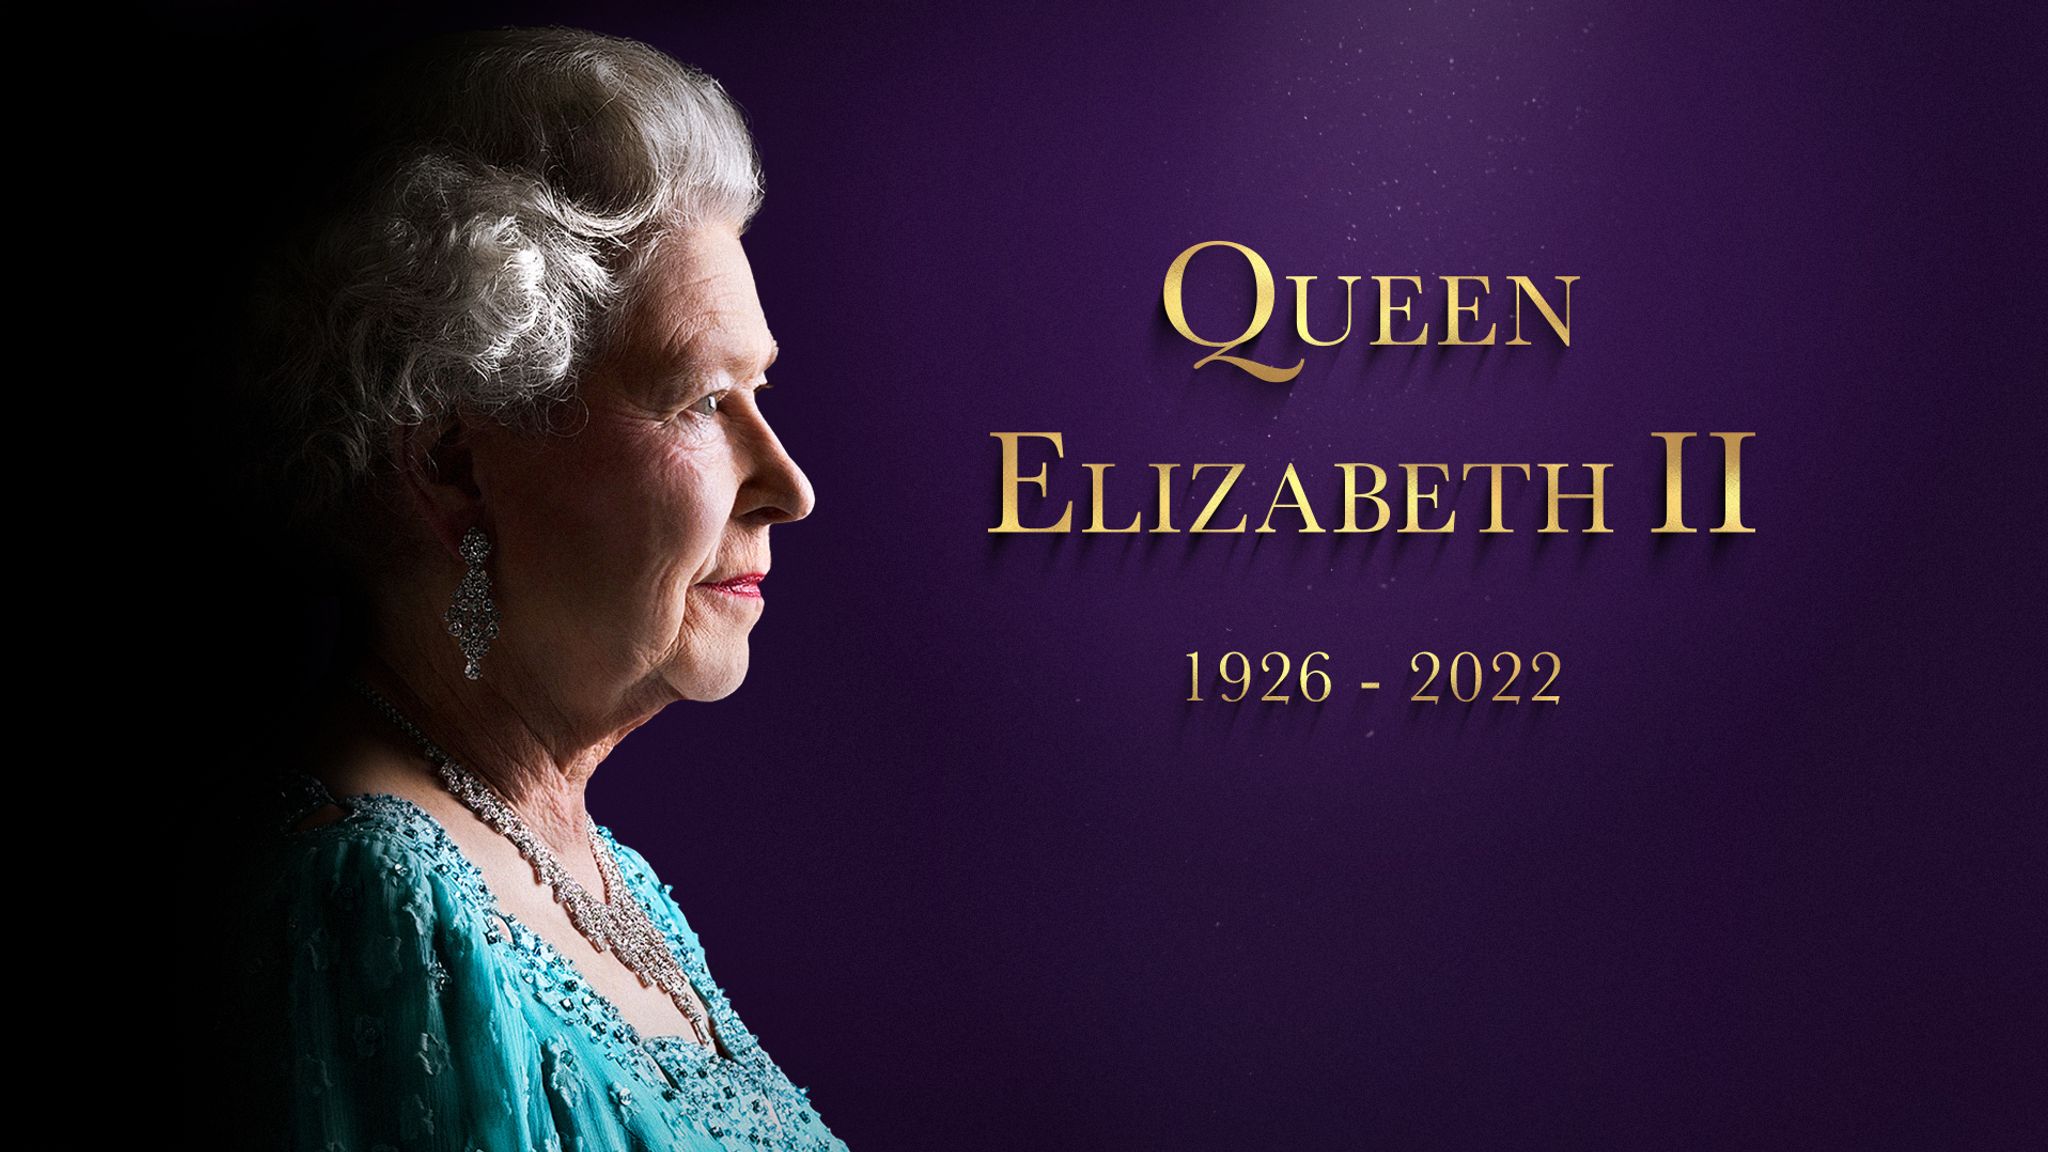 Date Of Queen Elizabeth II’s Burial Revealed